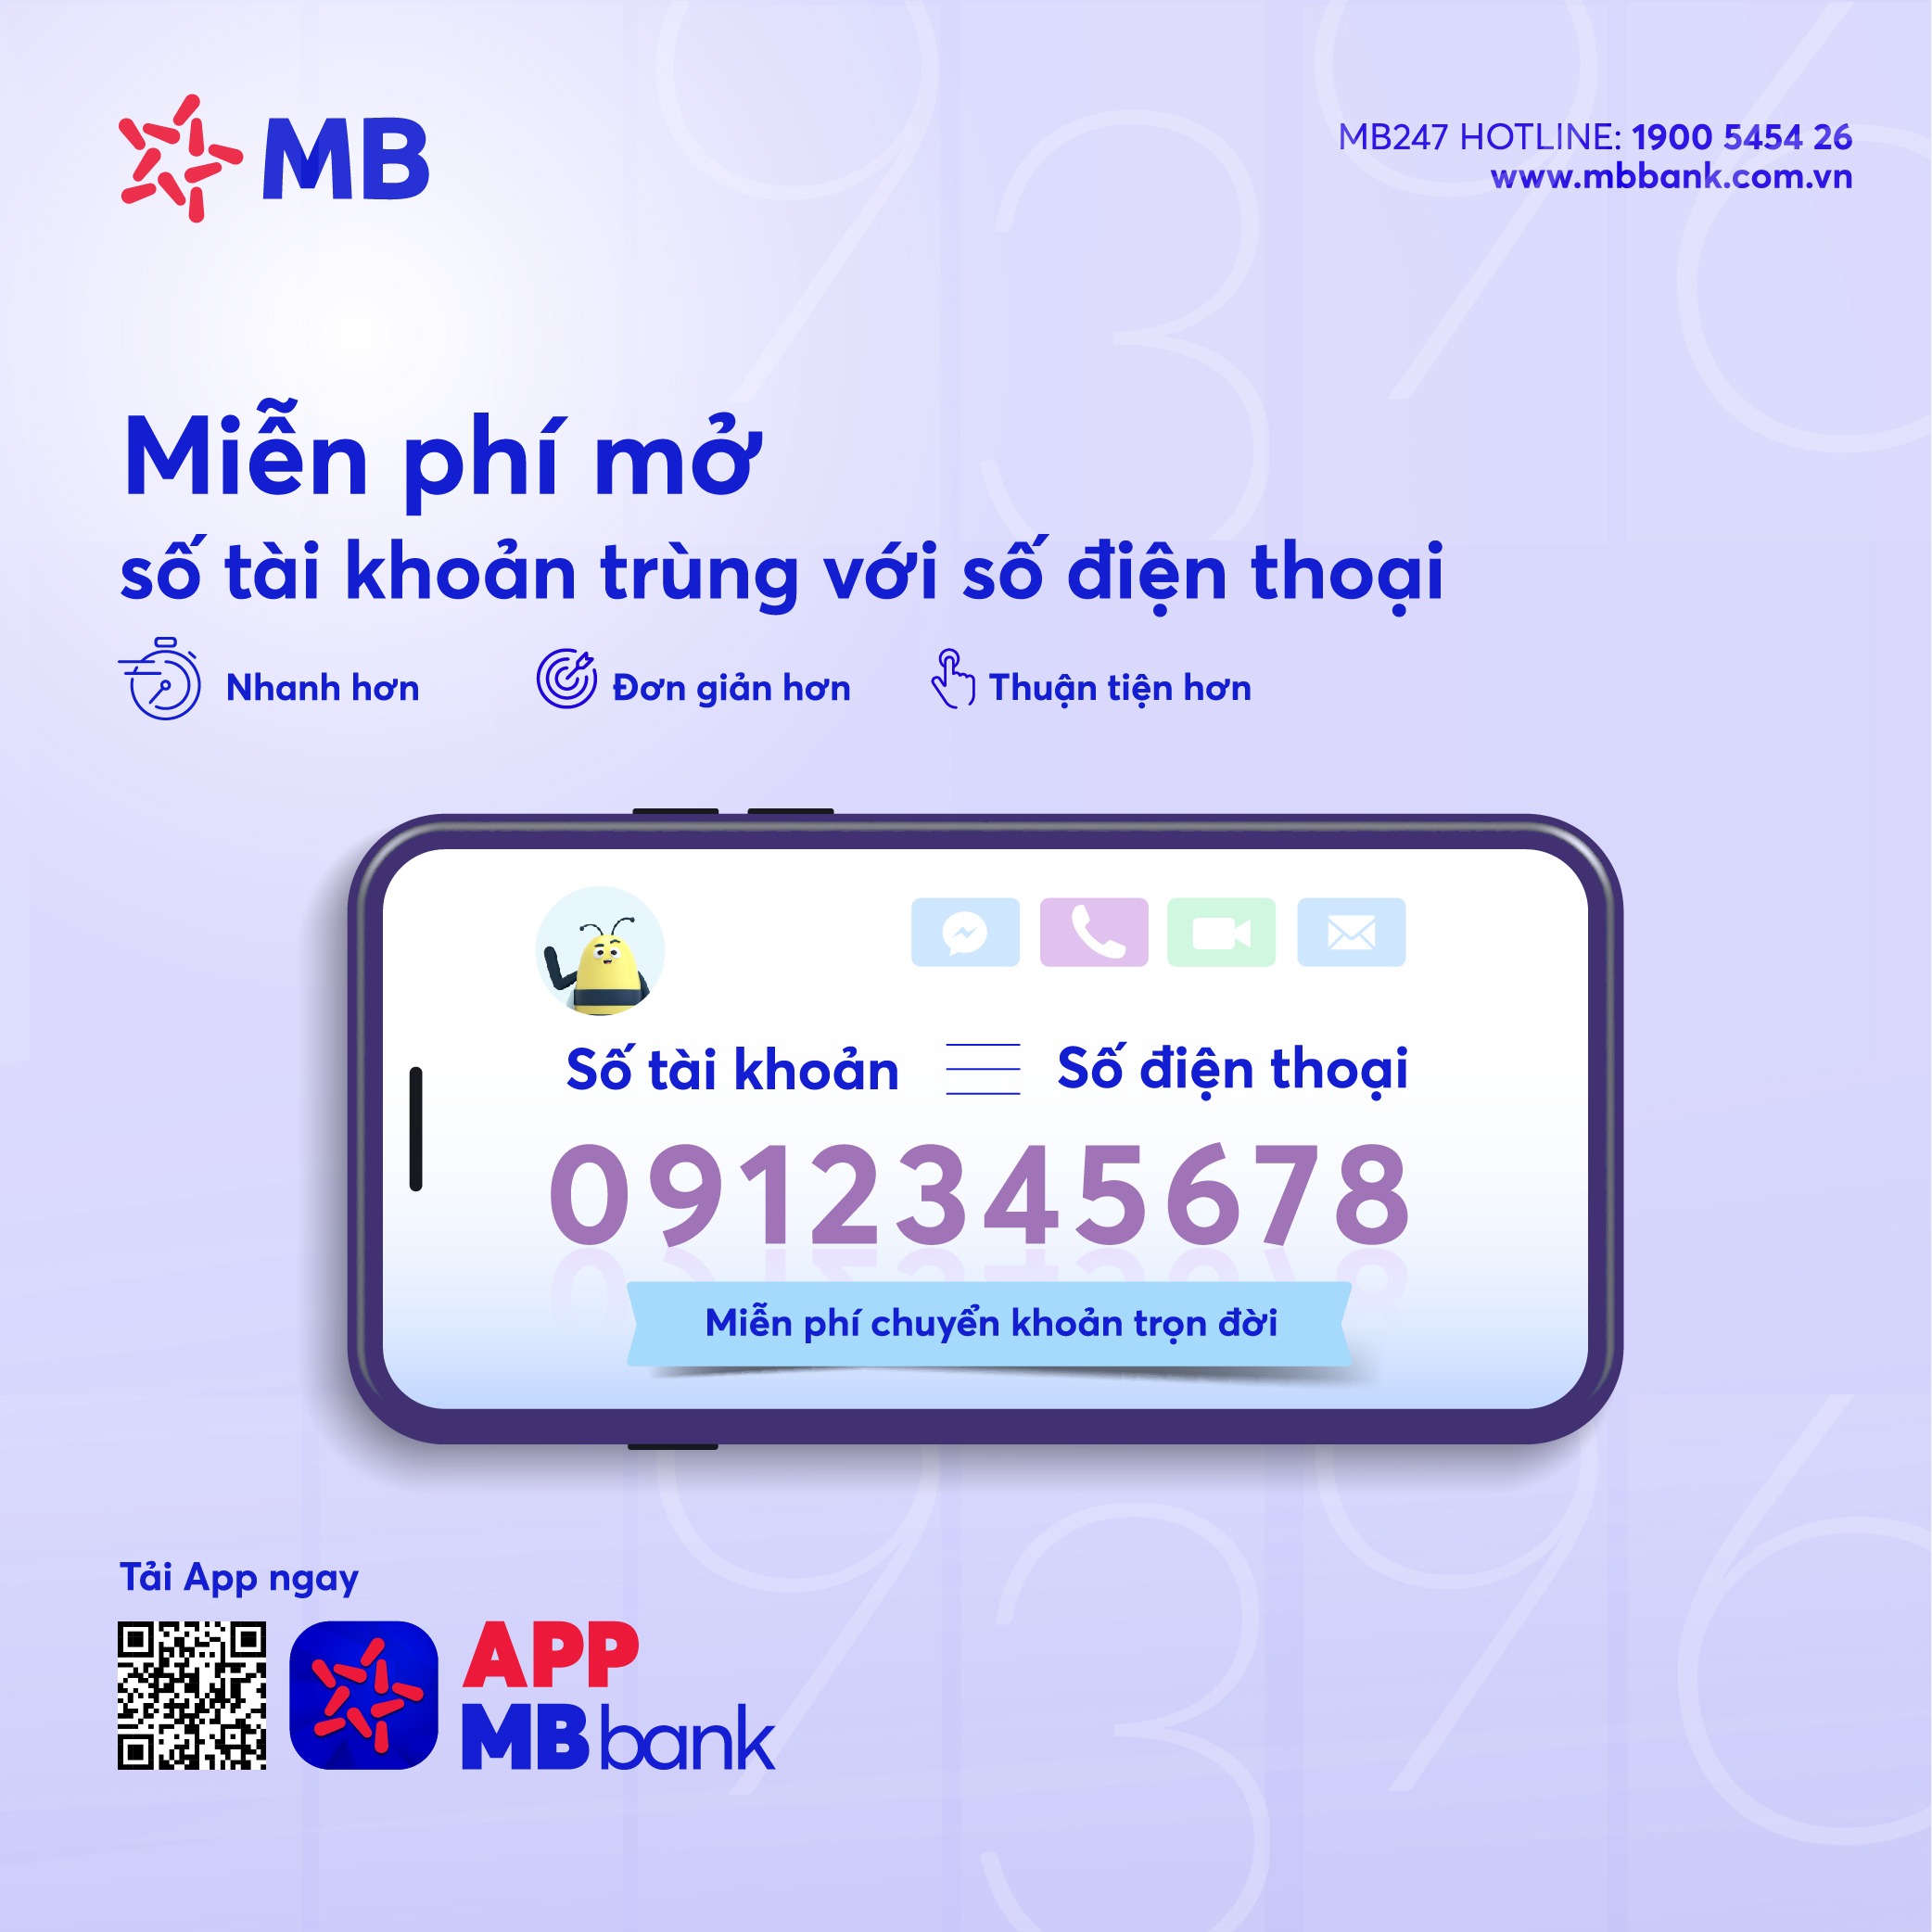 Hướng dẫn cách đăng ký App MB Bank bằng điện thoại 